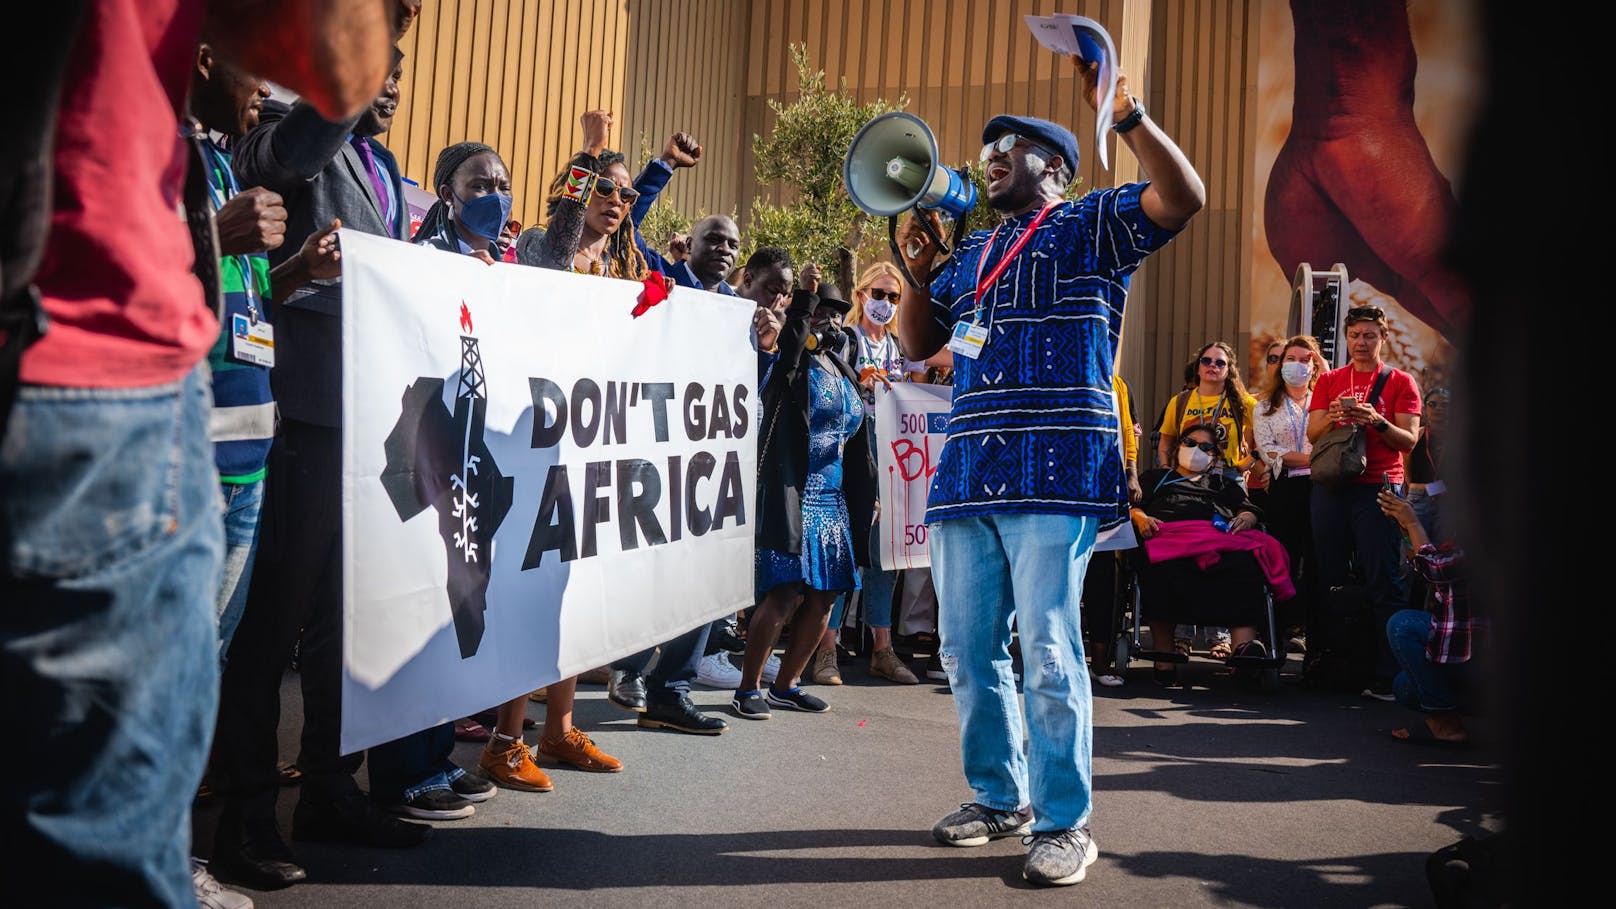 Protest gegen geplante Gasförderungen in Afrika. Am Konferenzgelände dürften nur handverlesene Gruppen demonstrieren.